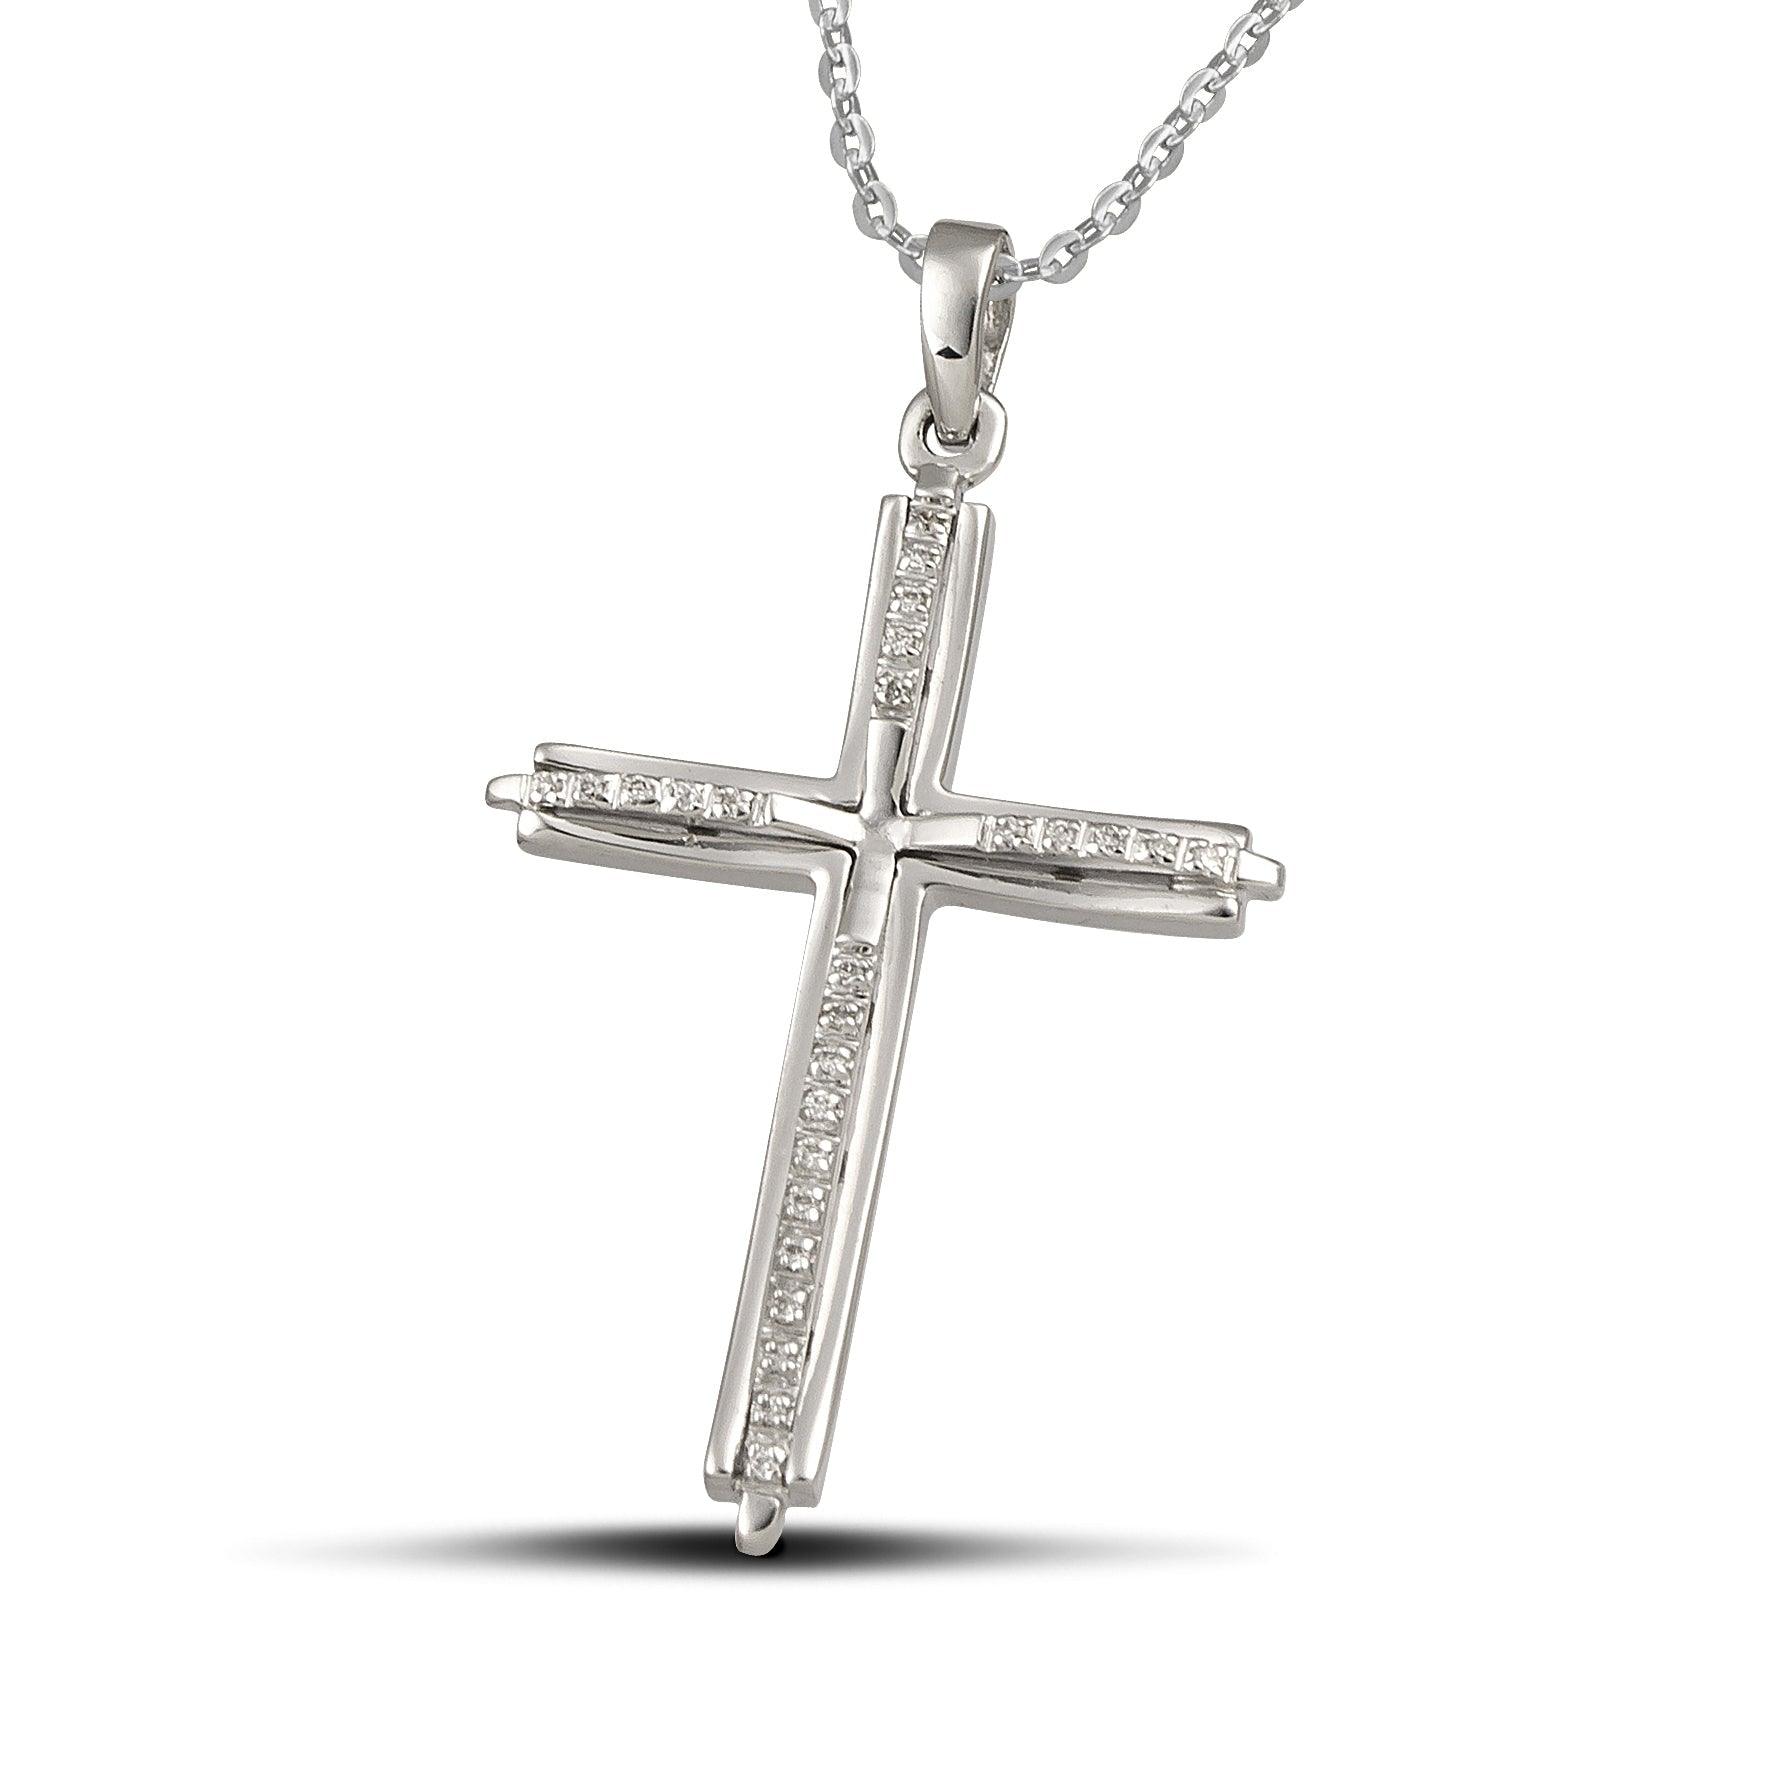 Γυναικείος σταυρός από λευκόχρυσο Κ18 με διαμάντια, περασμένος σε αλυσίδα.